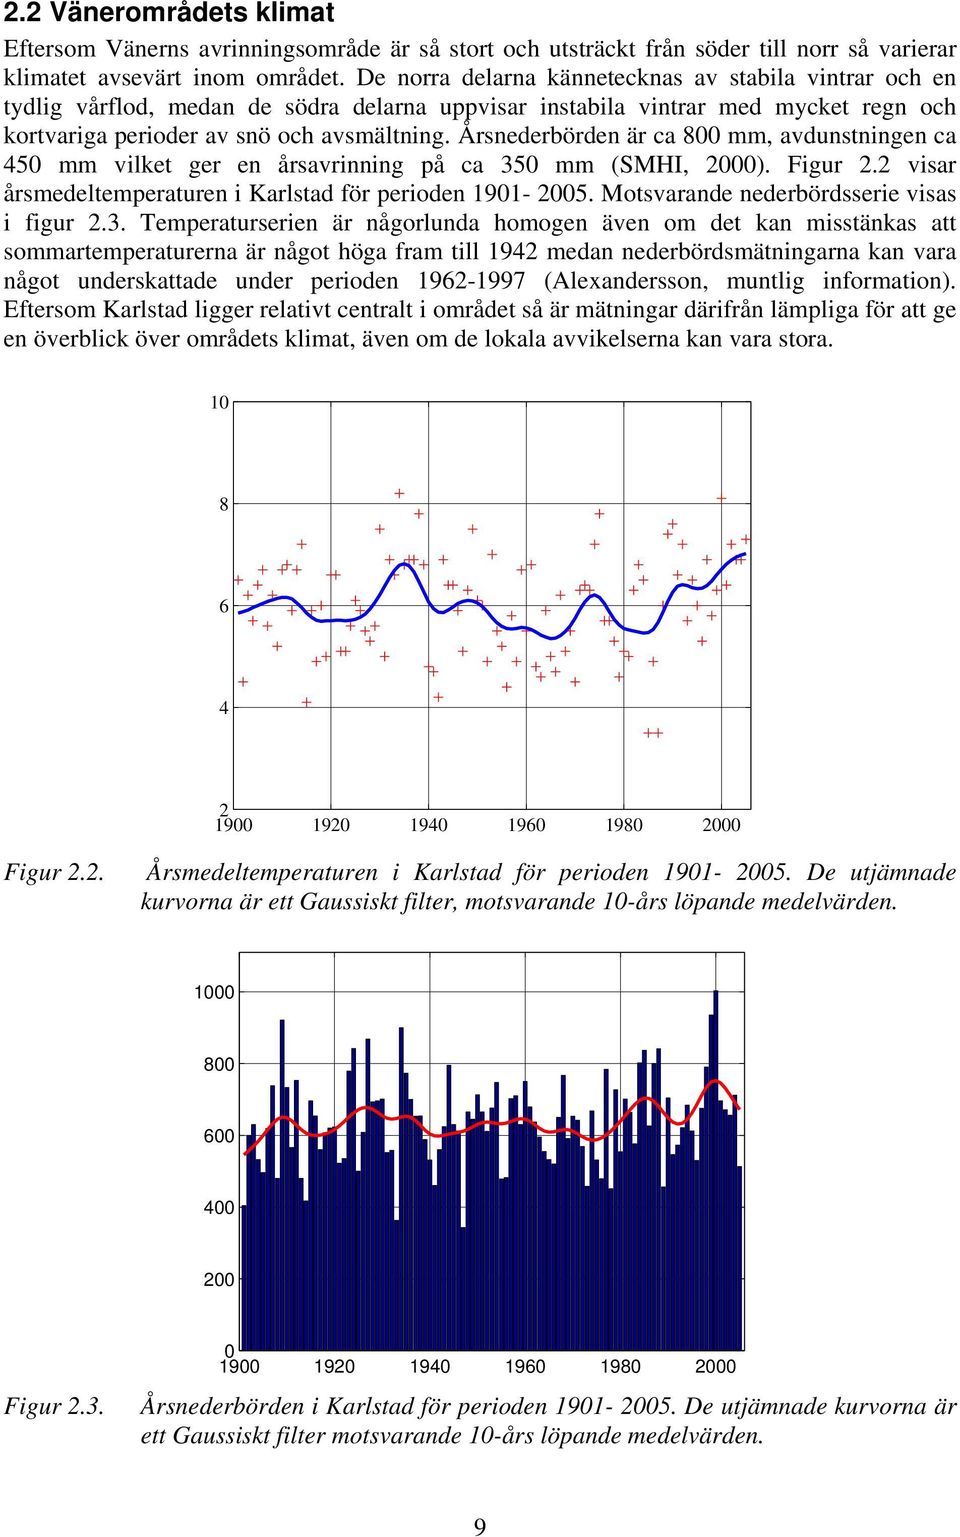 Årsnederbörden är ca 800 mm, avdunstningen ca 450 mm vilket ger en årsavrinning på ca 350 mm (SMHI, 2000). Figur 2.2 visar årsmedeltemperaturen i Karlstad för perioden 1901-2005.